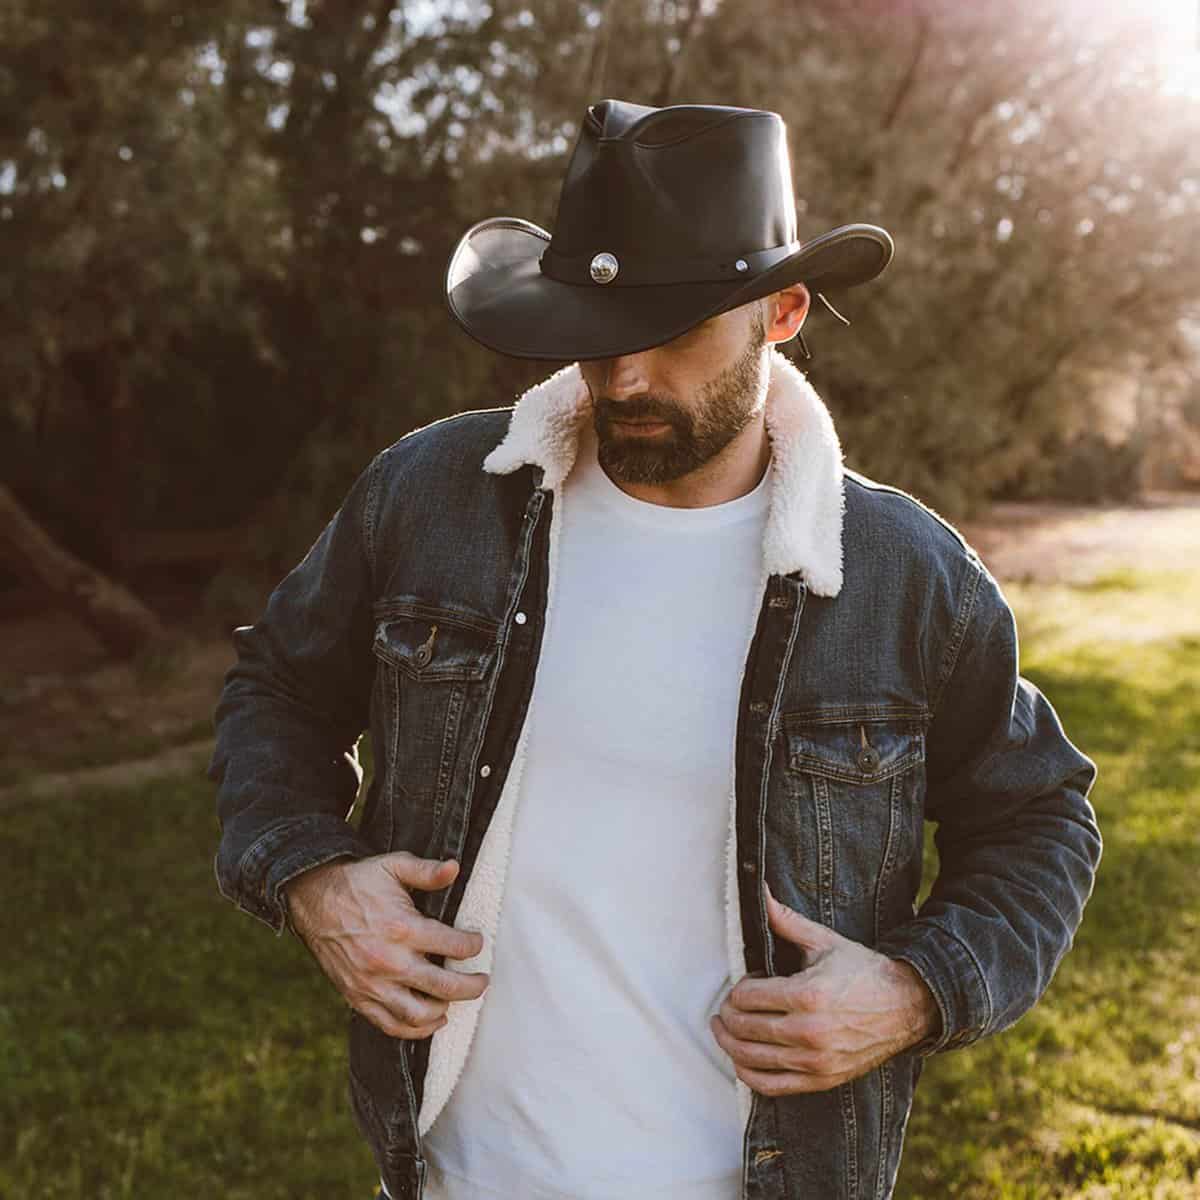 Man wearing a Cowboy hat